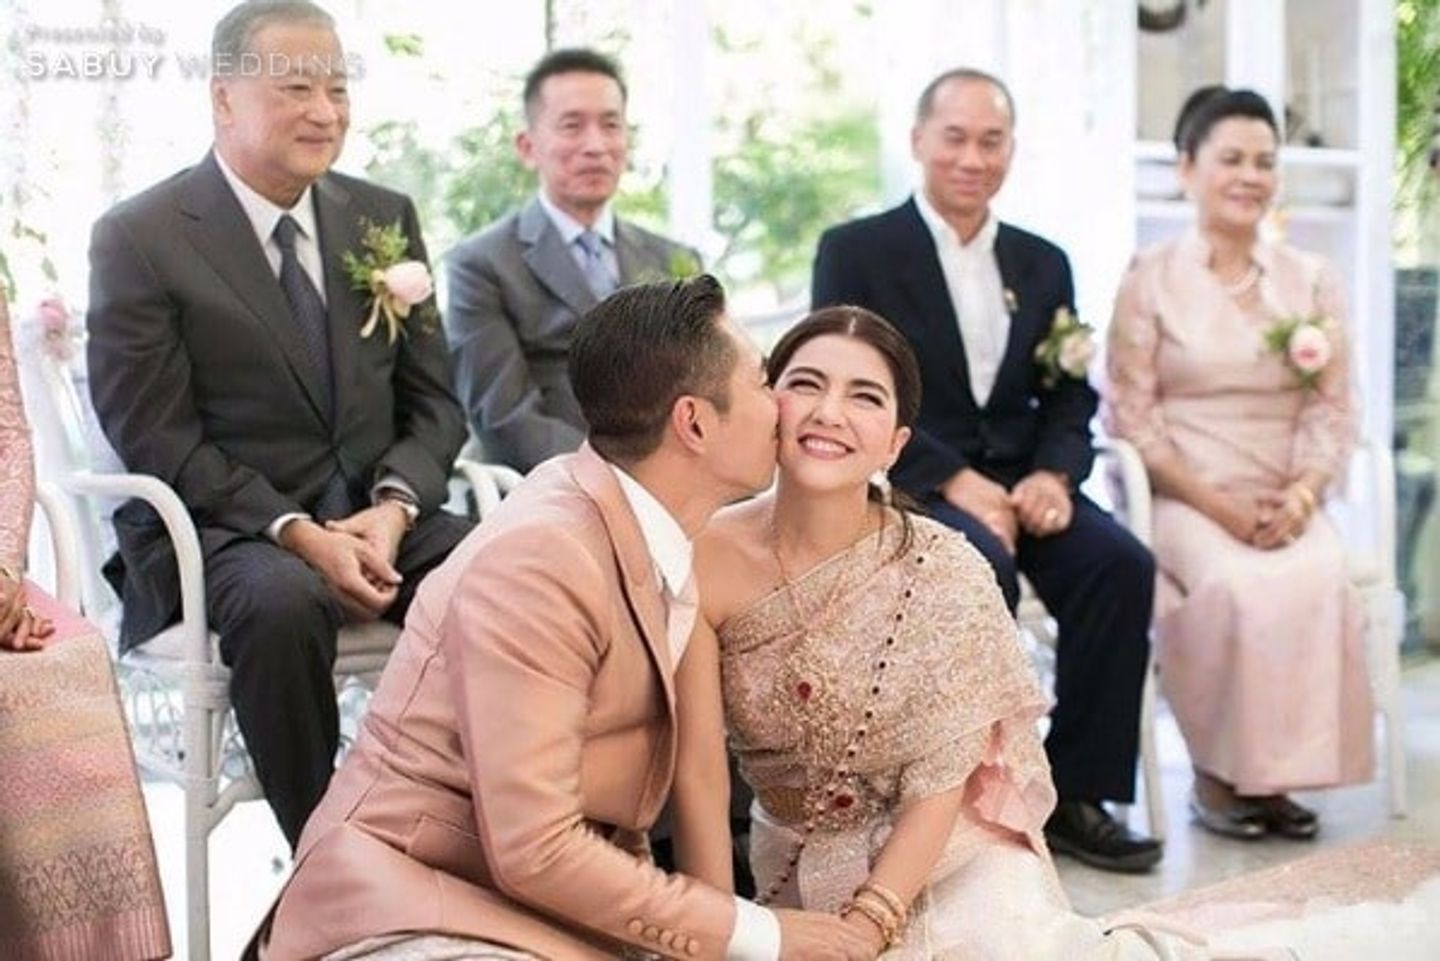 พิธีแต่งงานแบบไทย,งานแต่งดารา,ชุดแต่งงาน,ชุดไทย,งานแต่งงาน หวานชื่น 10ปีที่อยู่เคียงข้าง โอ๋ เพชรลดา&ฟิวส์ กิตติศักดิ์